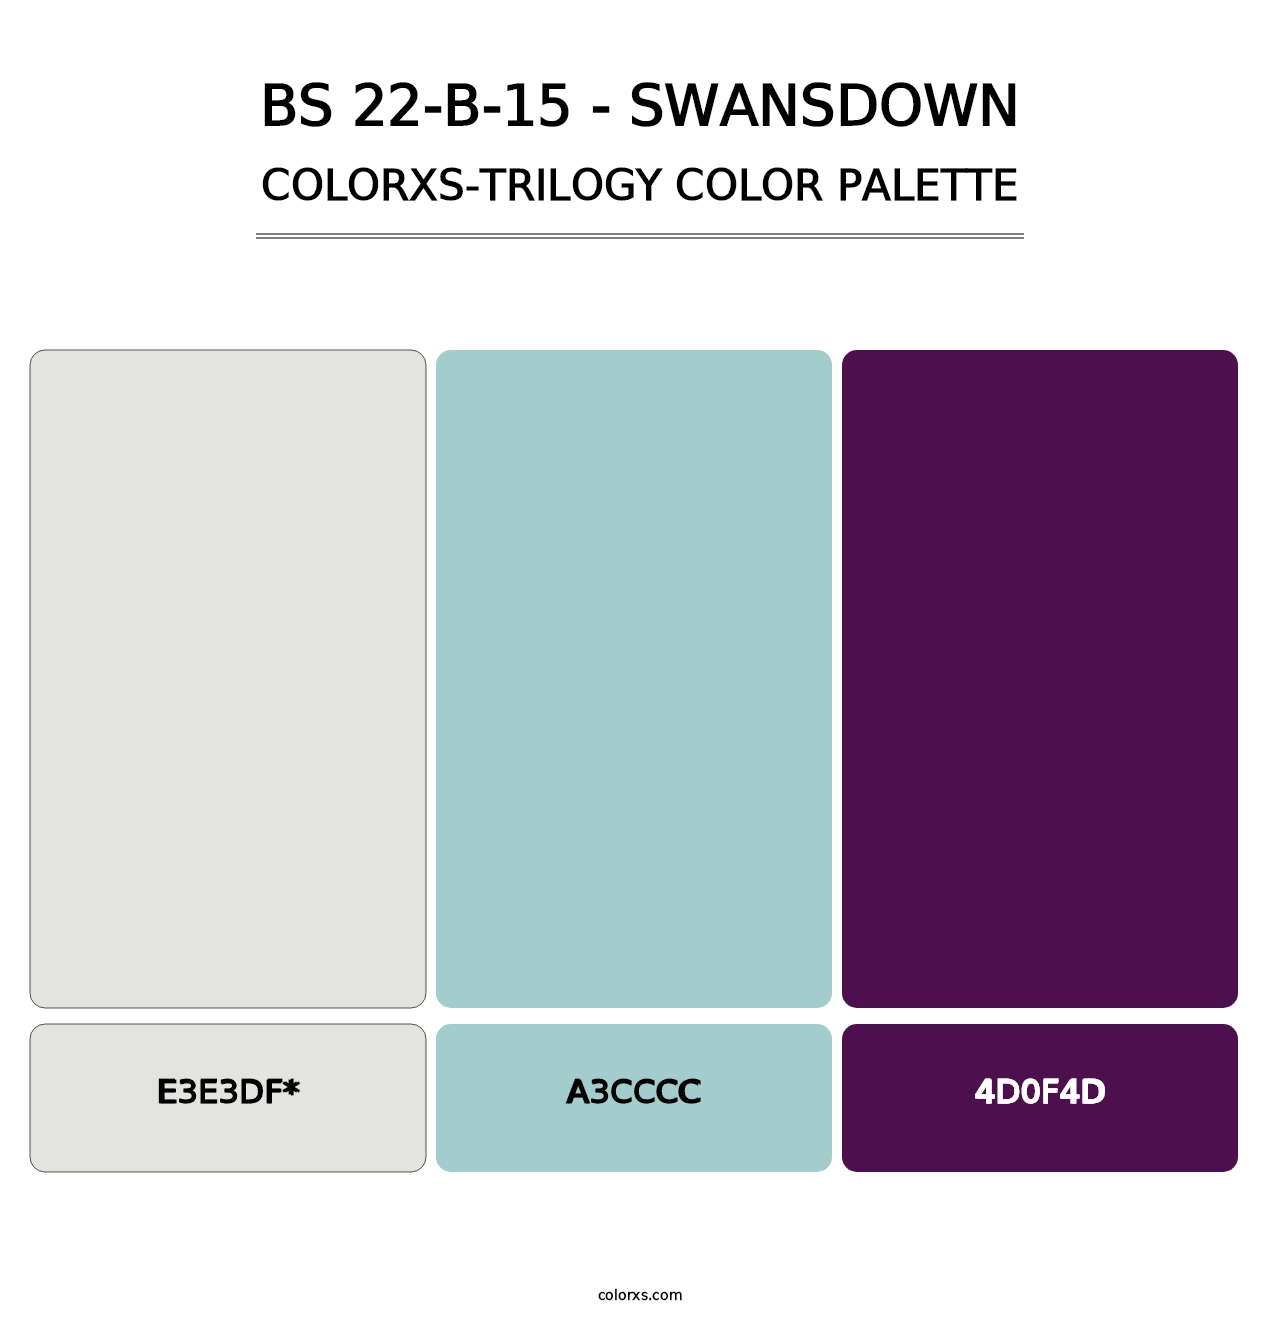 BS 22-B-15 - Swansdown - Colorxs Trilogy Palette